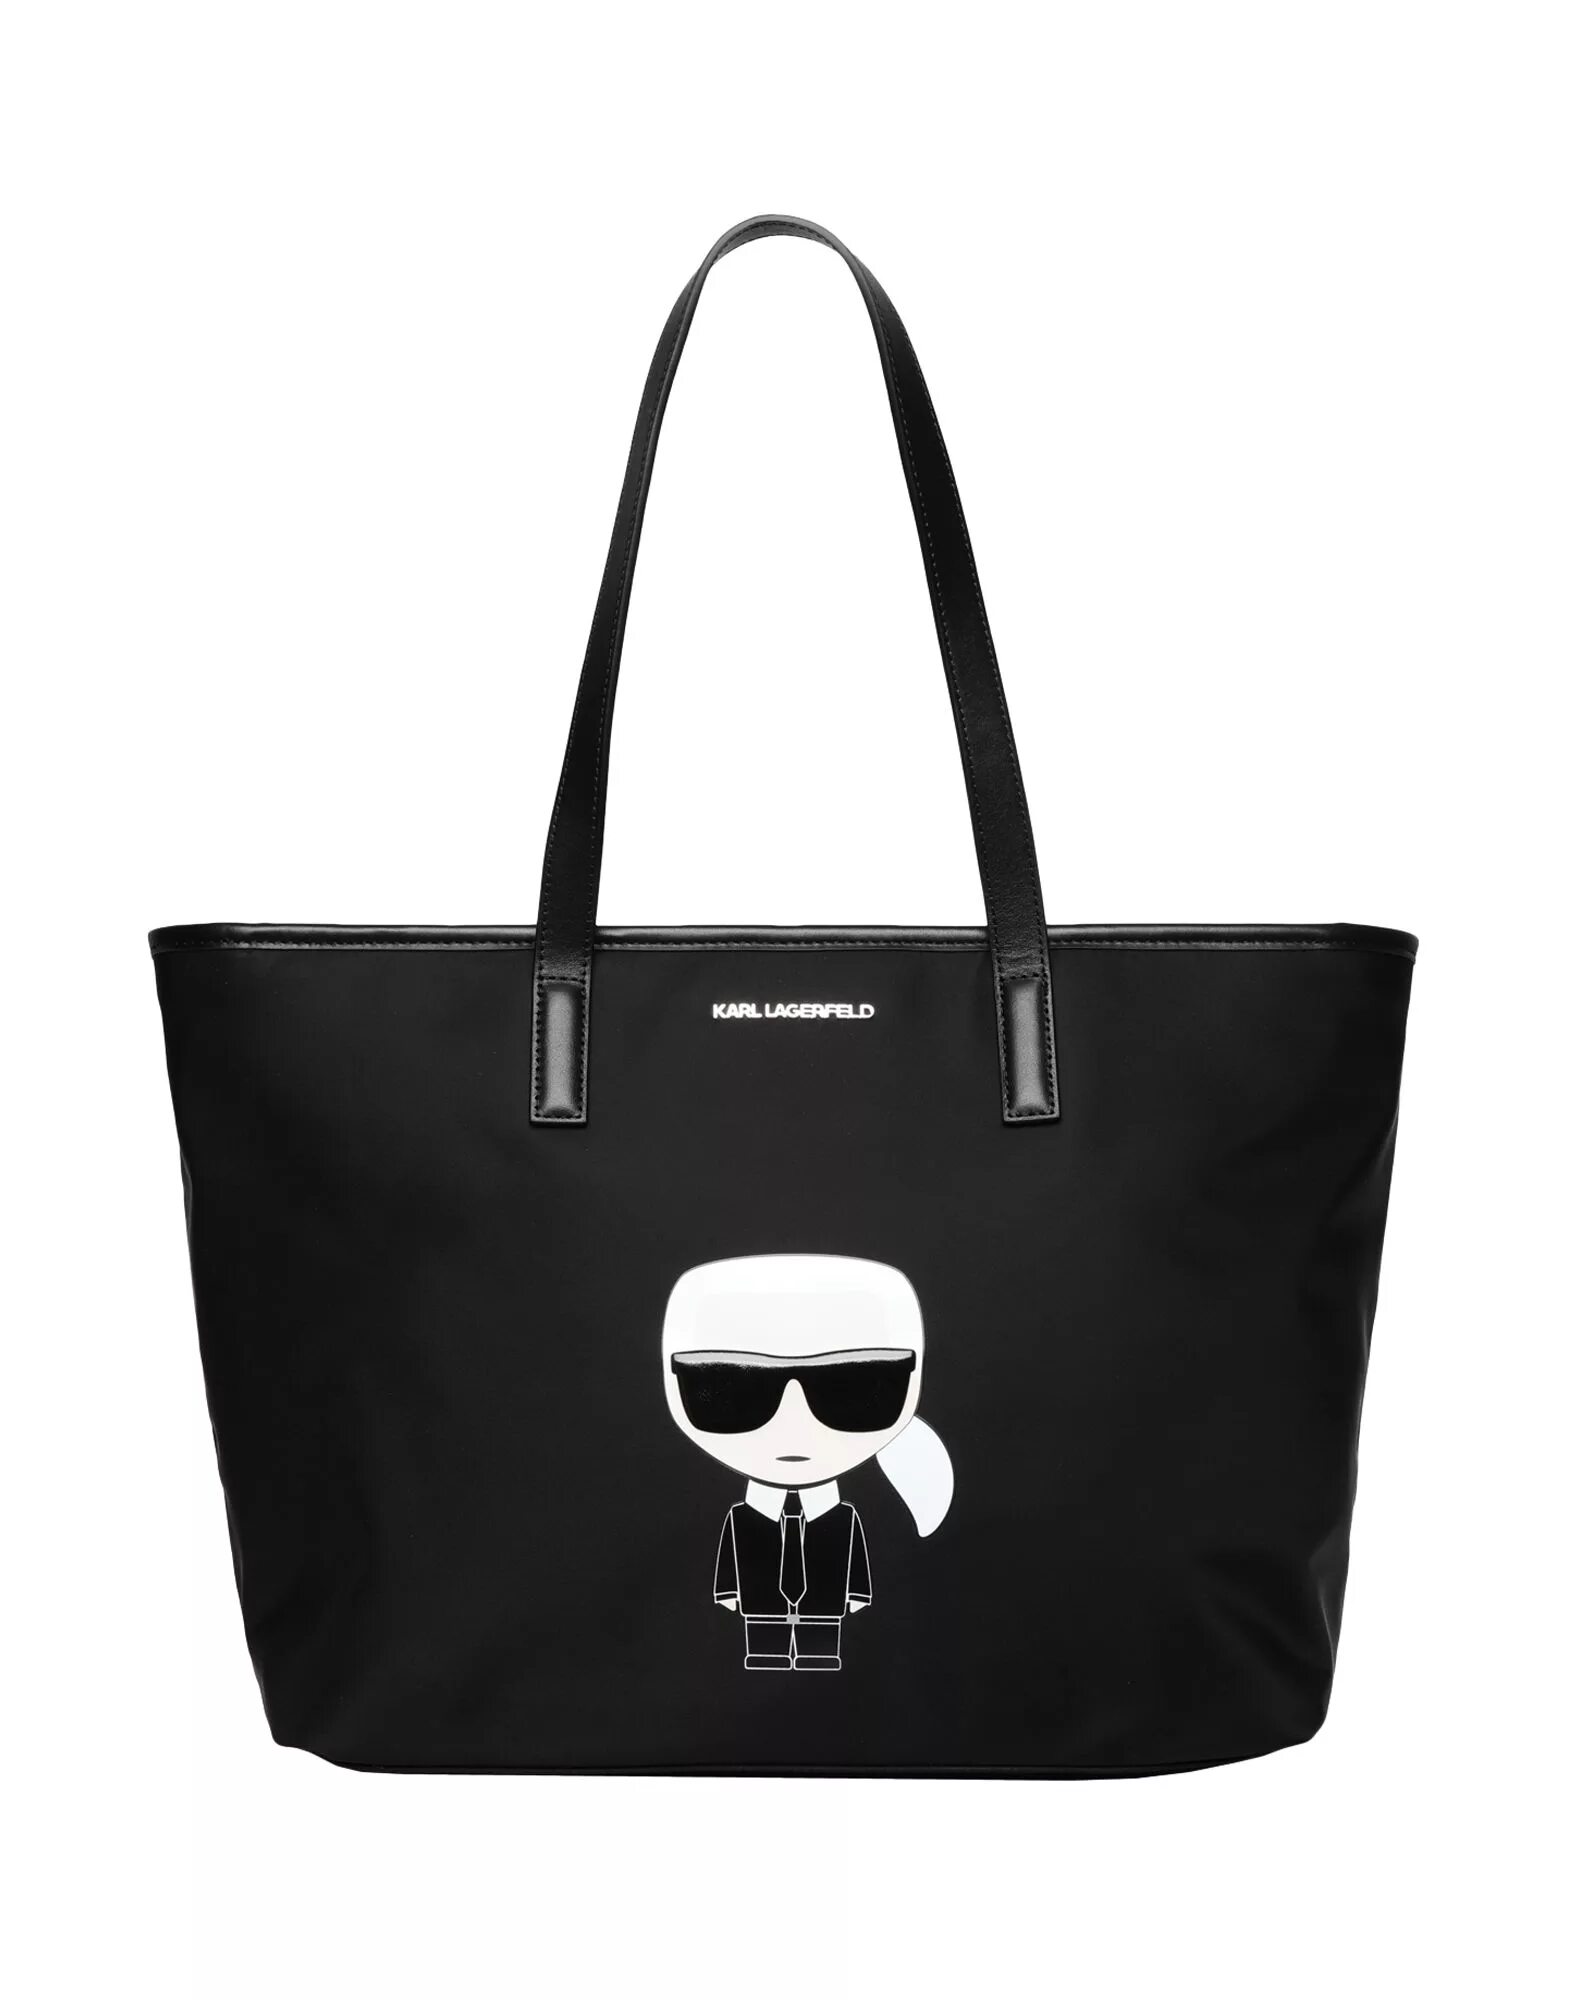 Купить сумку лагерфельд оригинал. Сумка Karl Lagerfeld ikonik черная. Сумка шоппер Karl Lagerfeld. Karl Lagerfeld сумка тоут.